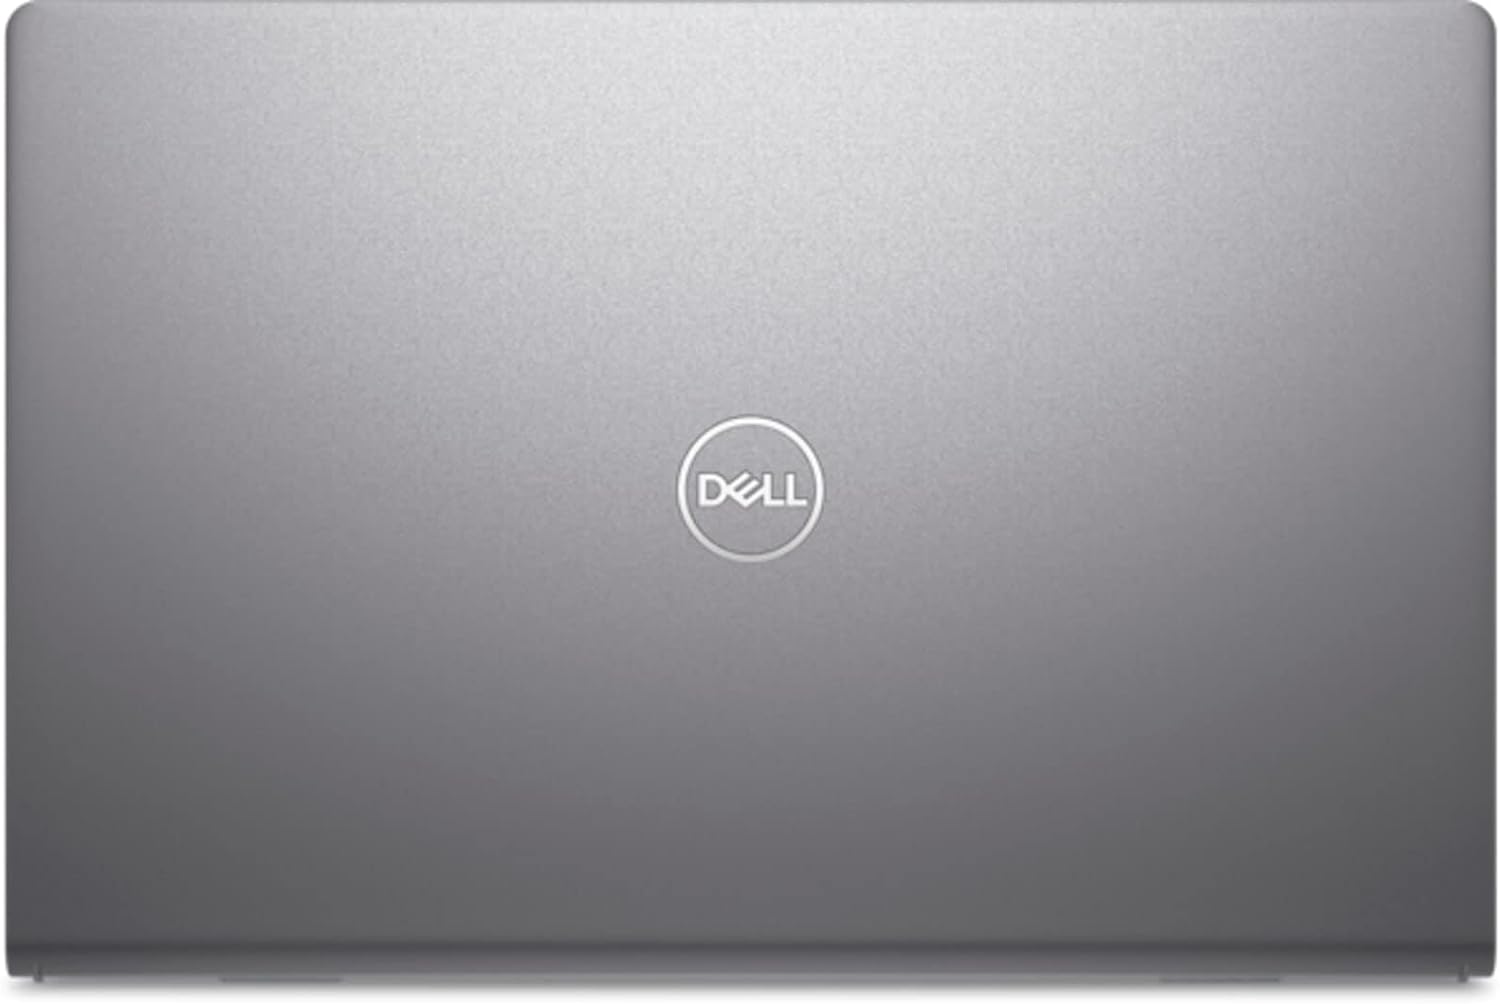 Black Dell Vostro 3520 Laptop - 15.6 Inches, Core i7, 512GB SSD, 16GB RAM 0196105587253